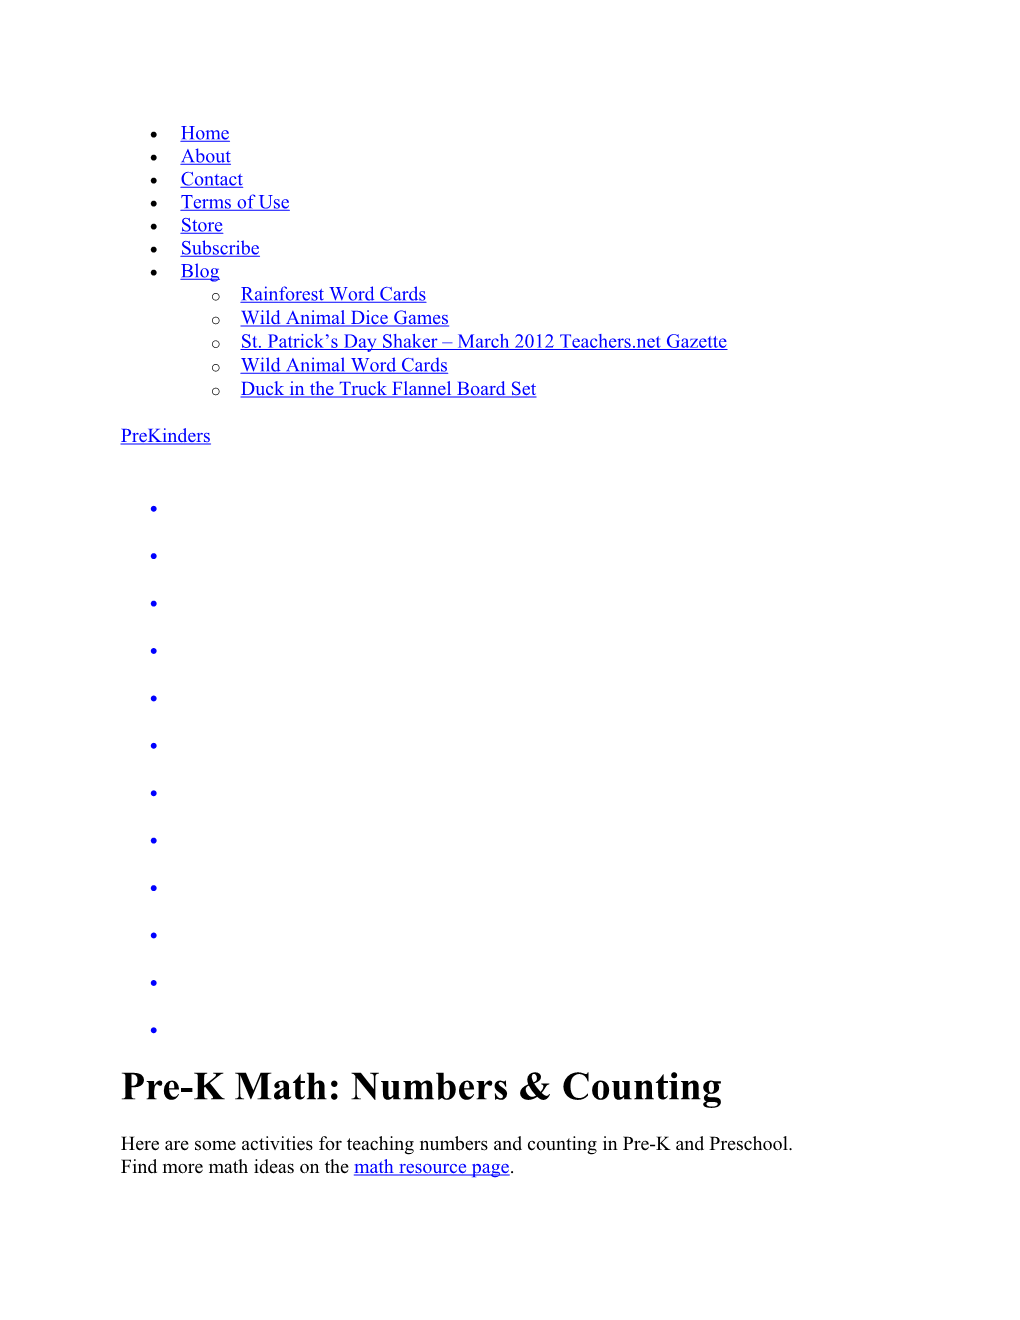 Pre-K Math: Numbers & Counting Prekinders